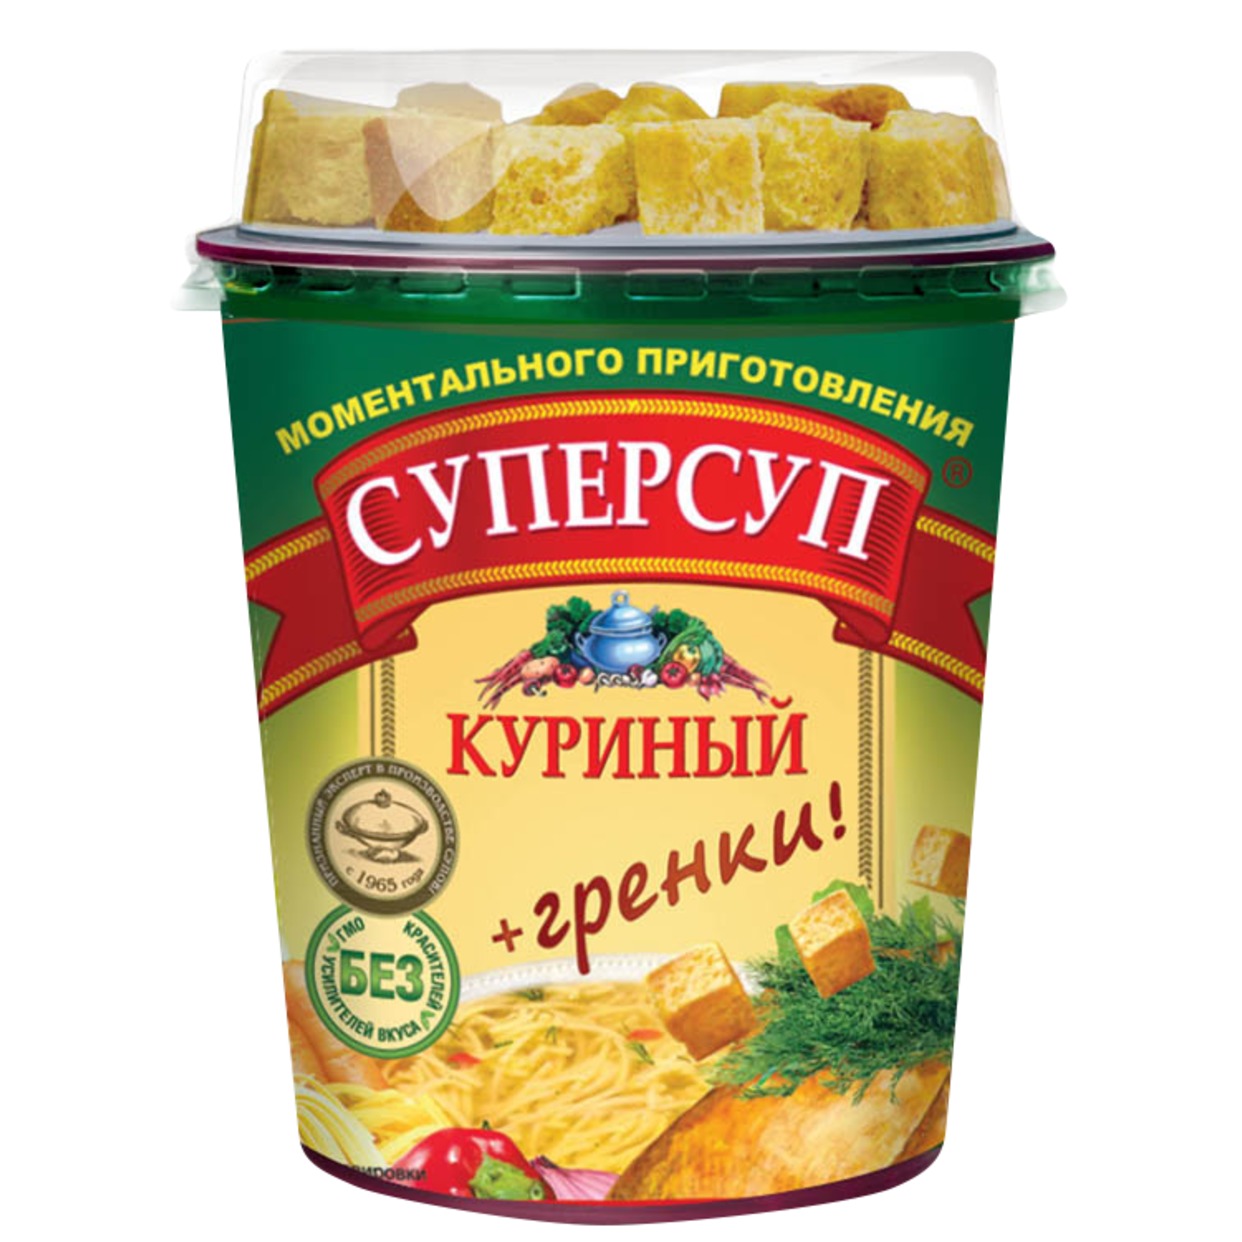 Концентрат пищевой: СУП товарный знак "Суперсуп" моментального приготовления "Куриный" (+гренки)